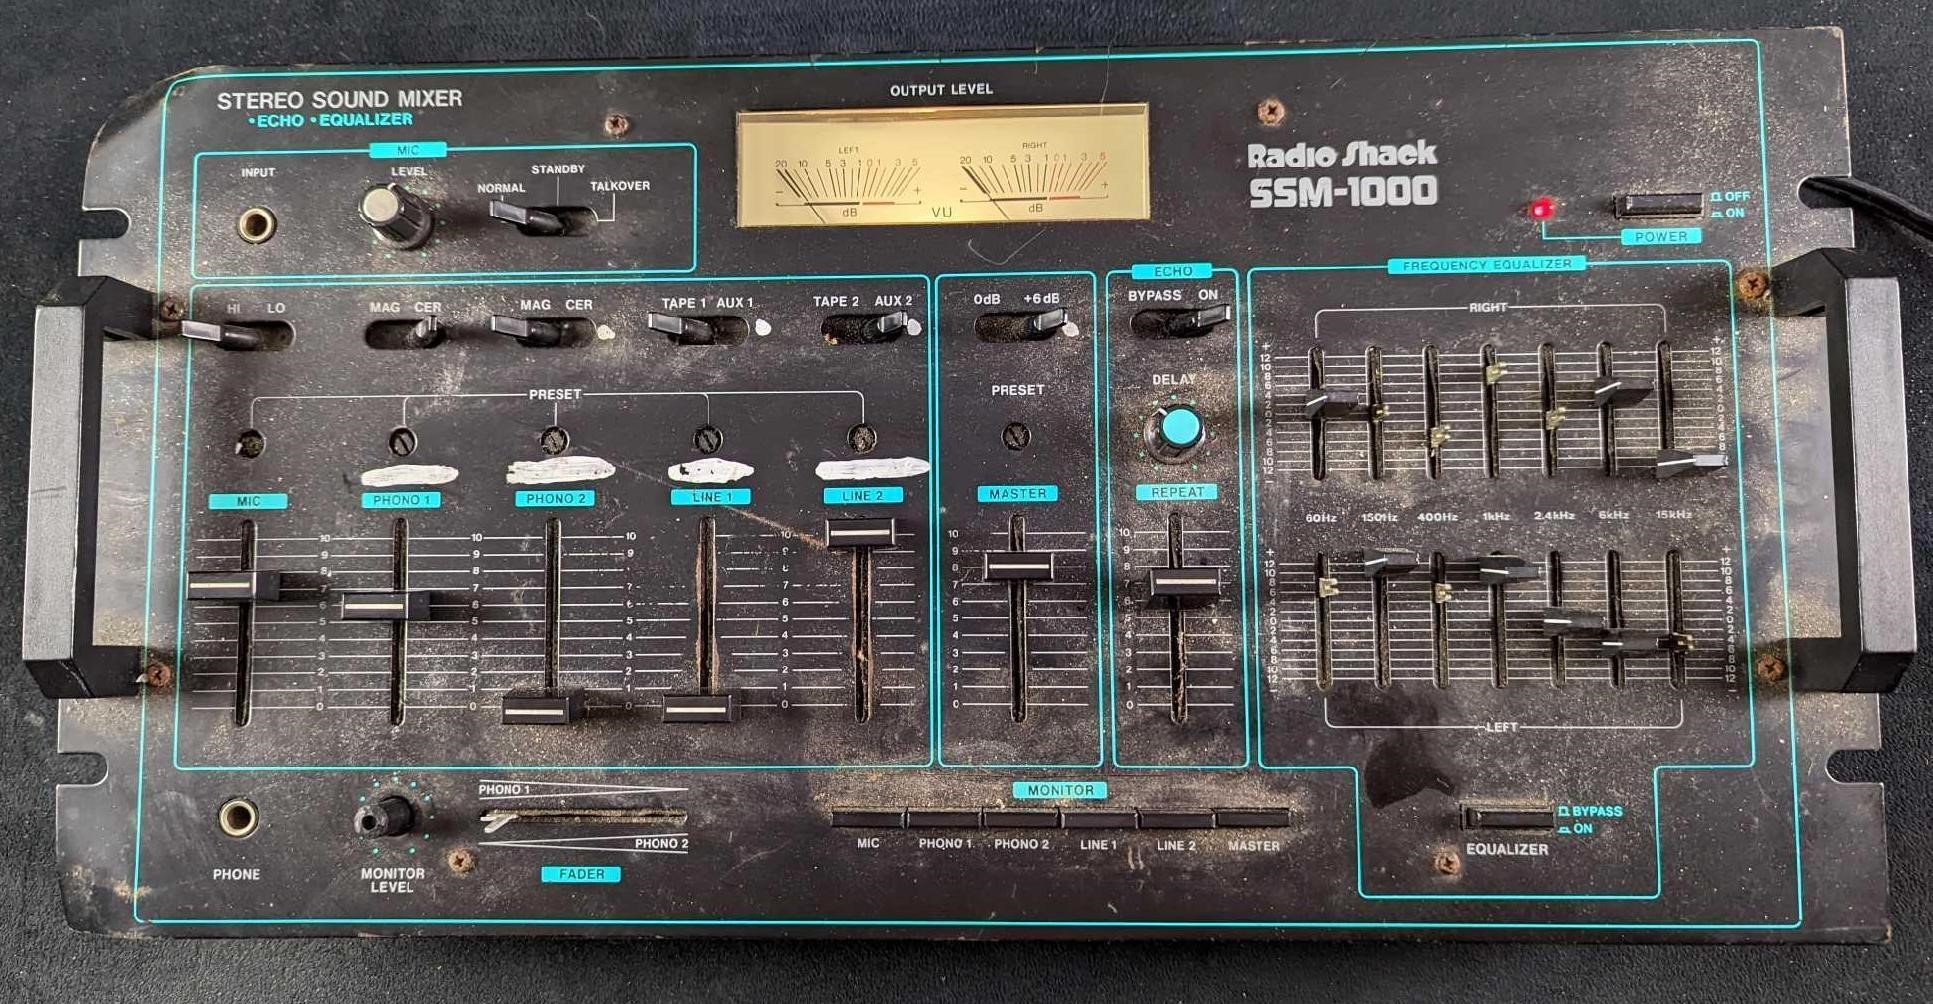 Radio Shack SSM-1000 Audio Mixer With Echo